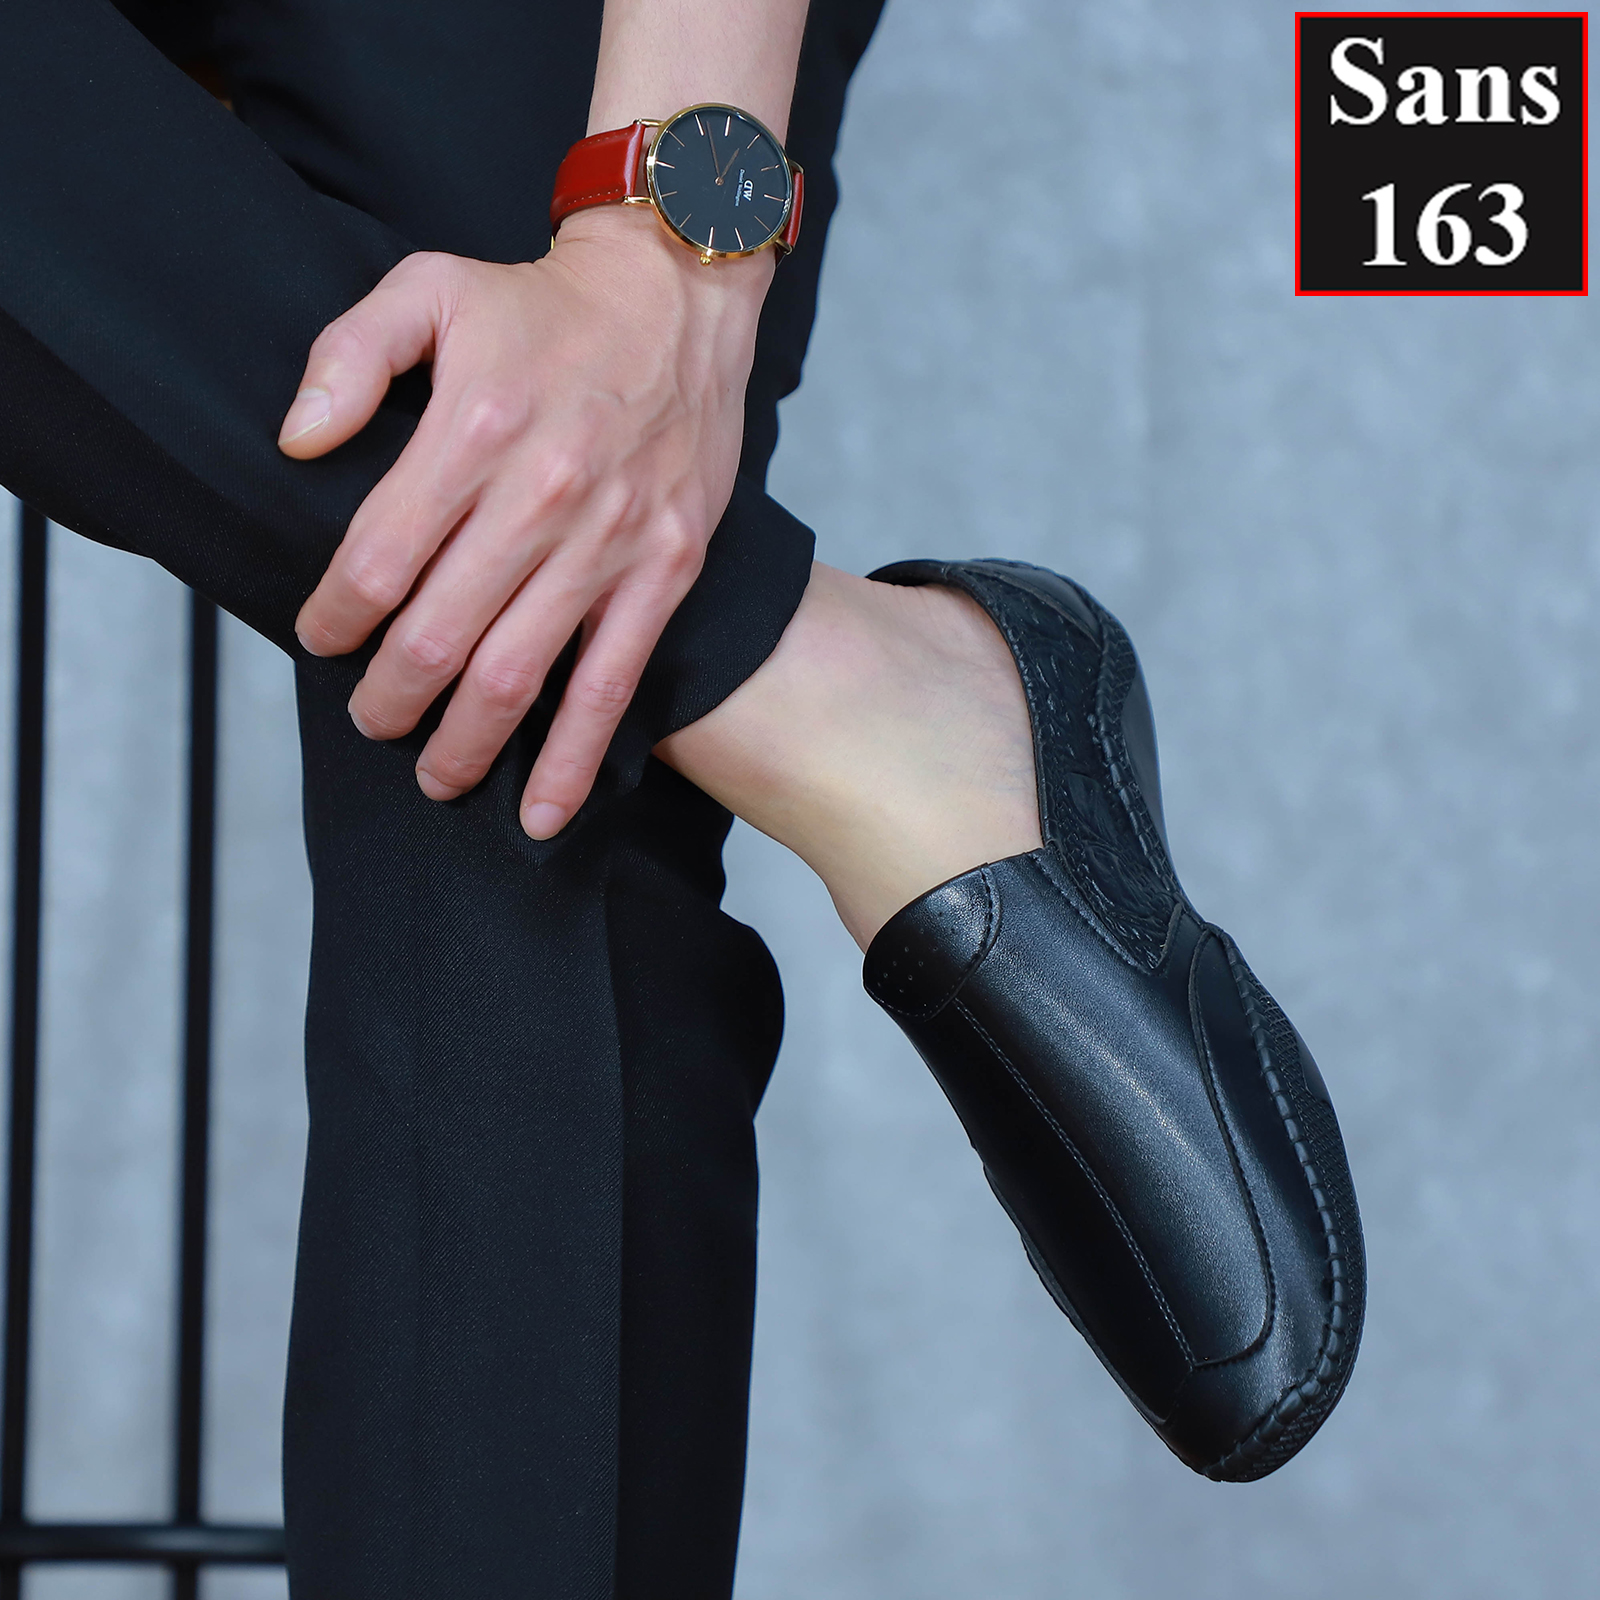 Giày mọi nam giá rẻ Sans163 giầy lười mềm trơn moca công sở đế bệt mũi vuông đen nâu đẹp thời trang hàn quốc đi làm